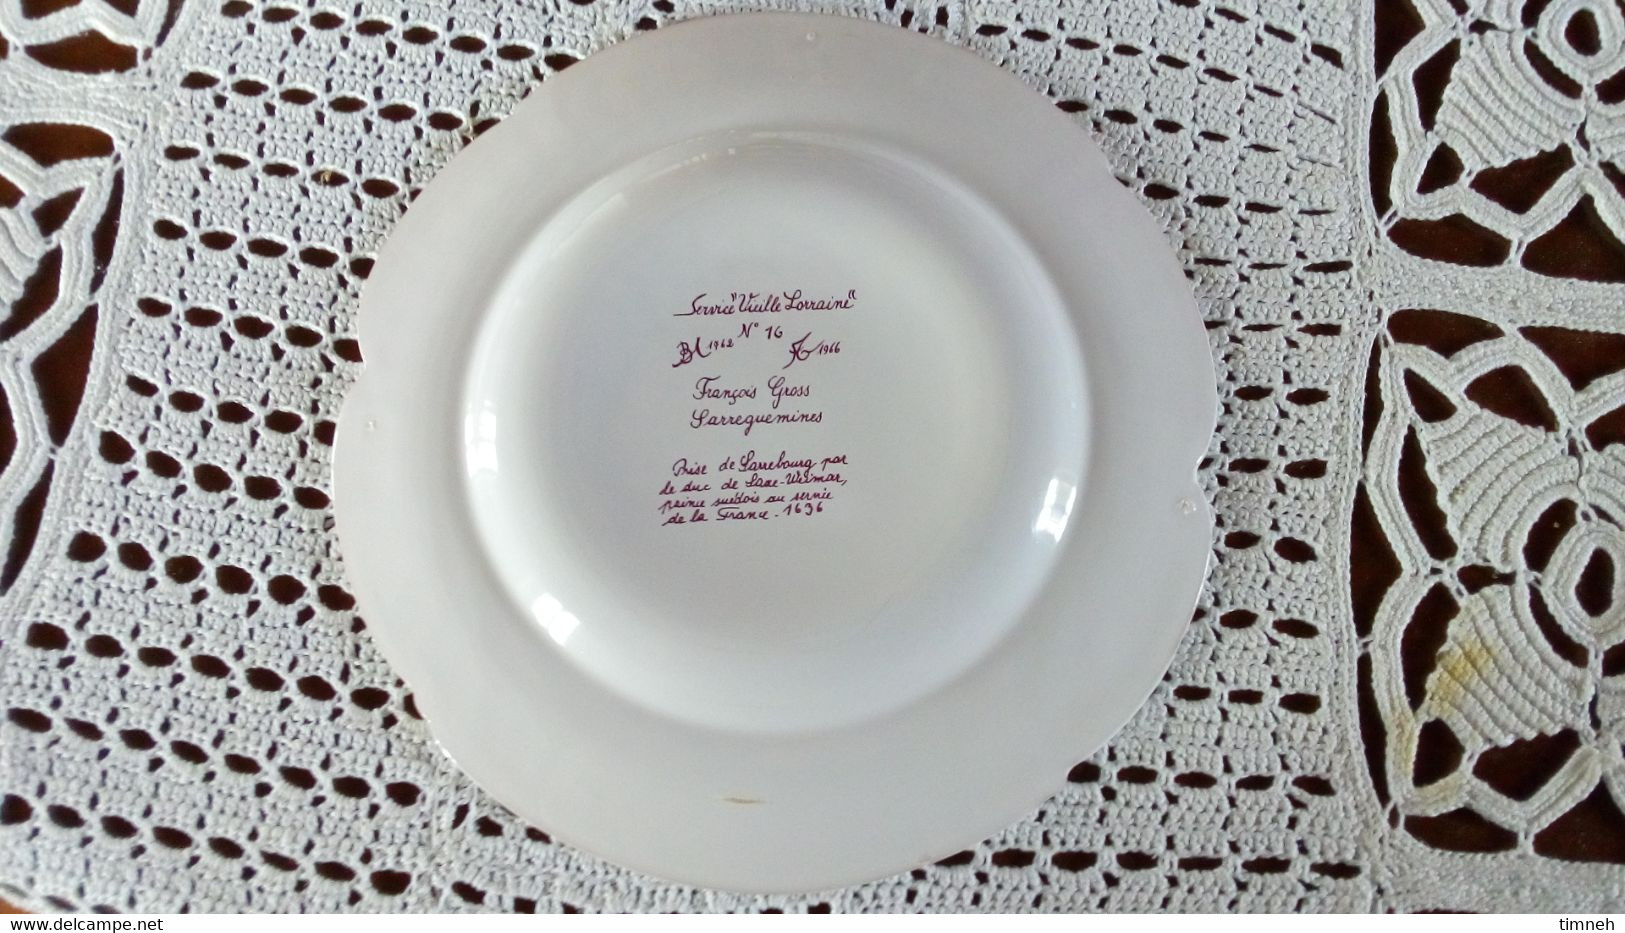 François GROSS Sarreguemines assiette plate - PRISE DE SARREBOURG 1696 - Service Vieille Lorraine 1966 Bicentenaire